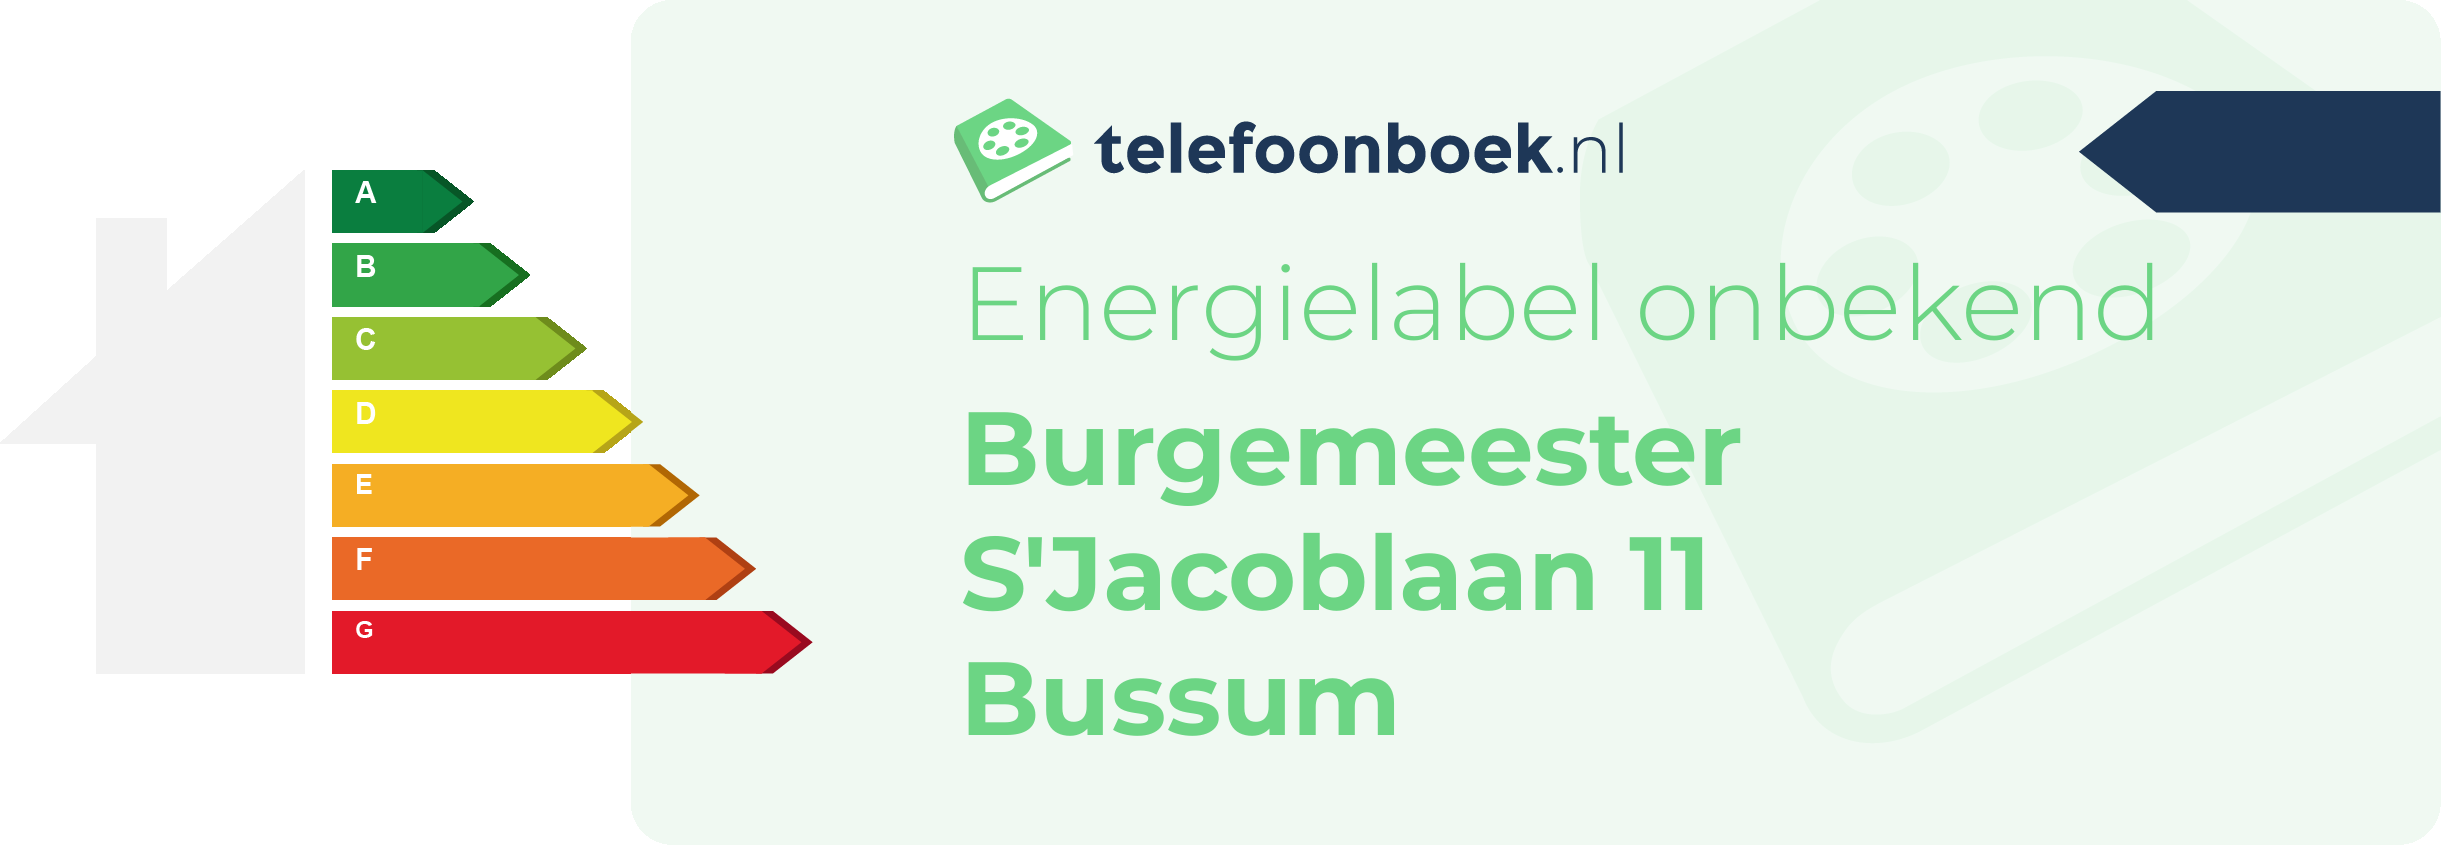 Energielabel Burgemeester S'Jacoblaan 11 Bussum